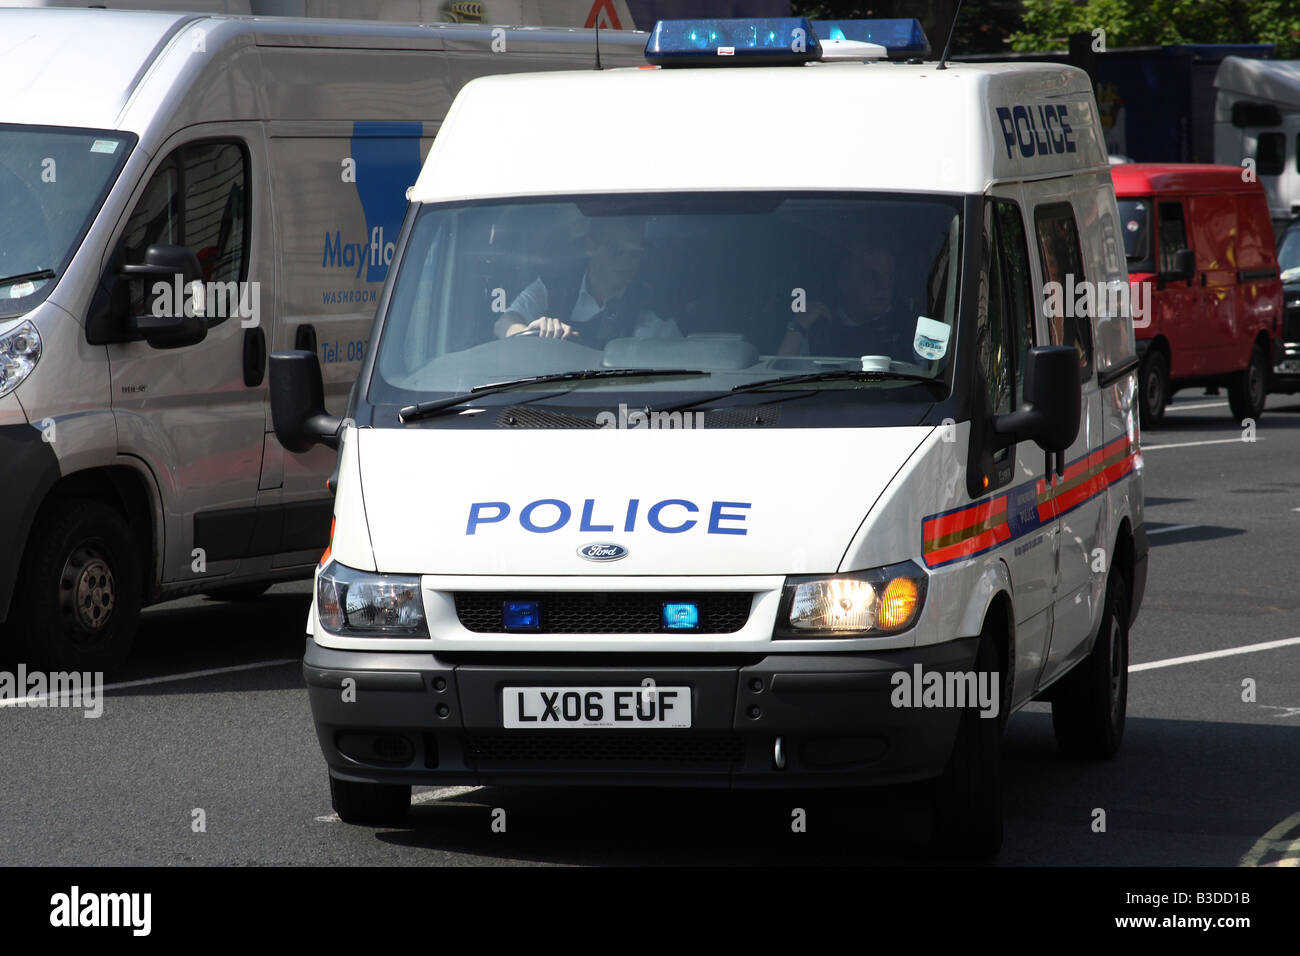 Un van de la Police de répondre à l'urgence, la place du Parlement, Westminster, Londres, Angleterre, Royaume-Uni Banque D'Images